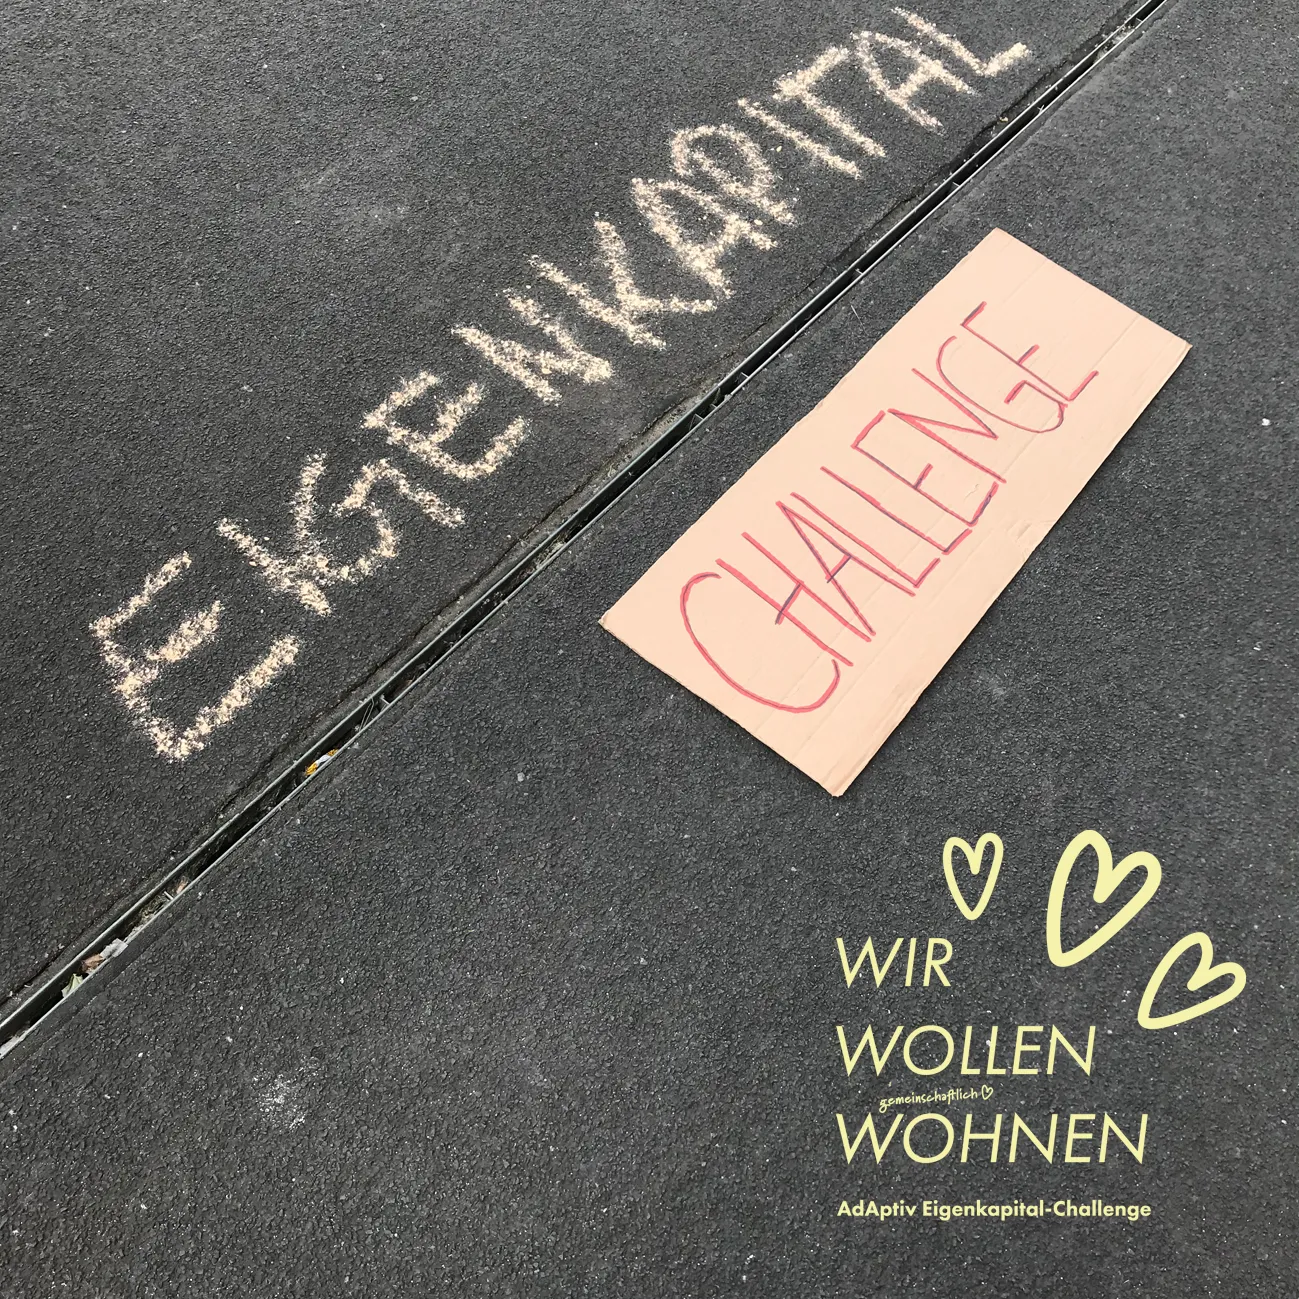 Das Wort "EIGENKAPITAL", mit Straßenkreide auf den Asphalt geschrieben, darunter eine Linie und ein Pappschild mit der Aufschrift "CHALLENGE". Über das Foto ist der Slogan "Wir wollen wohnen" gelegt, dekoriert mit mehreren Herzchen.